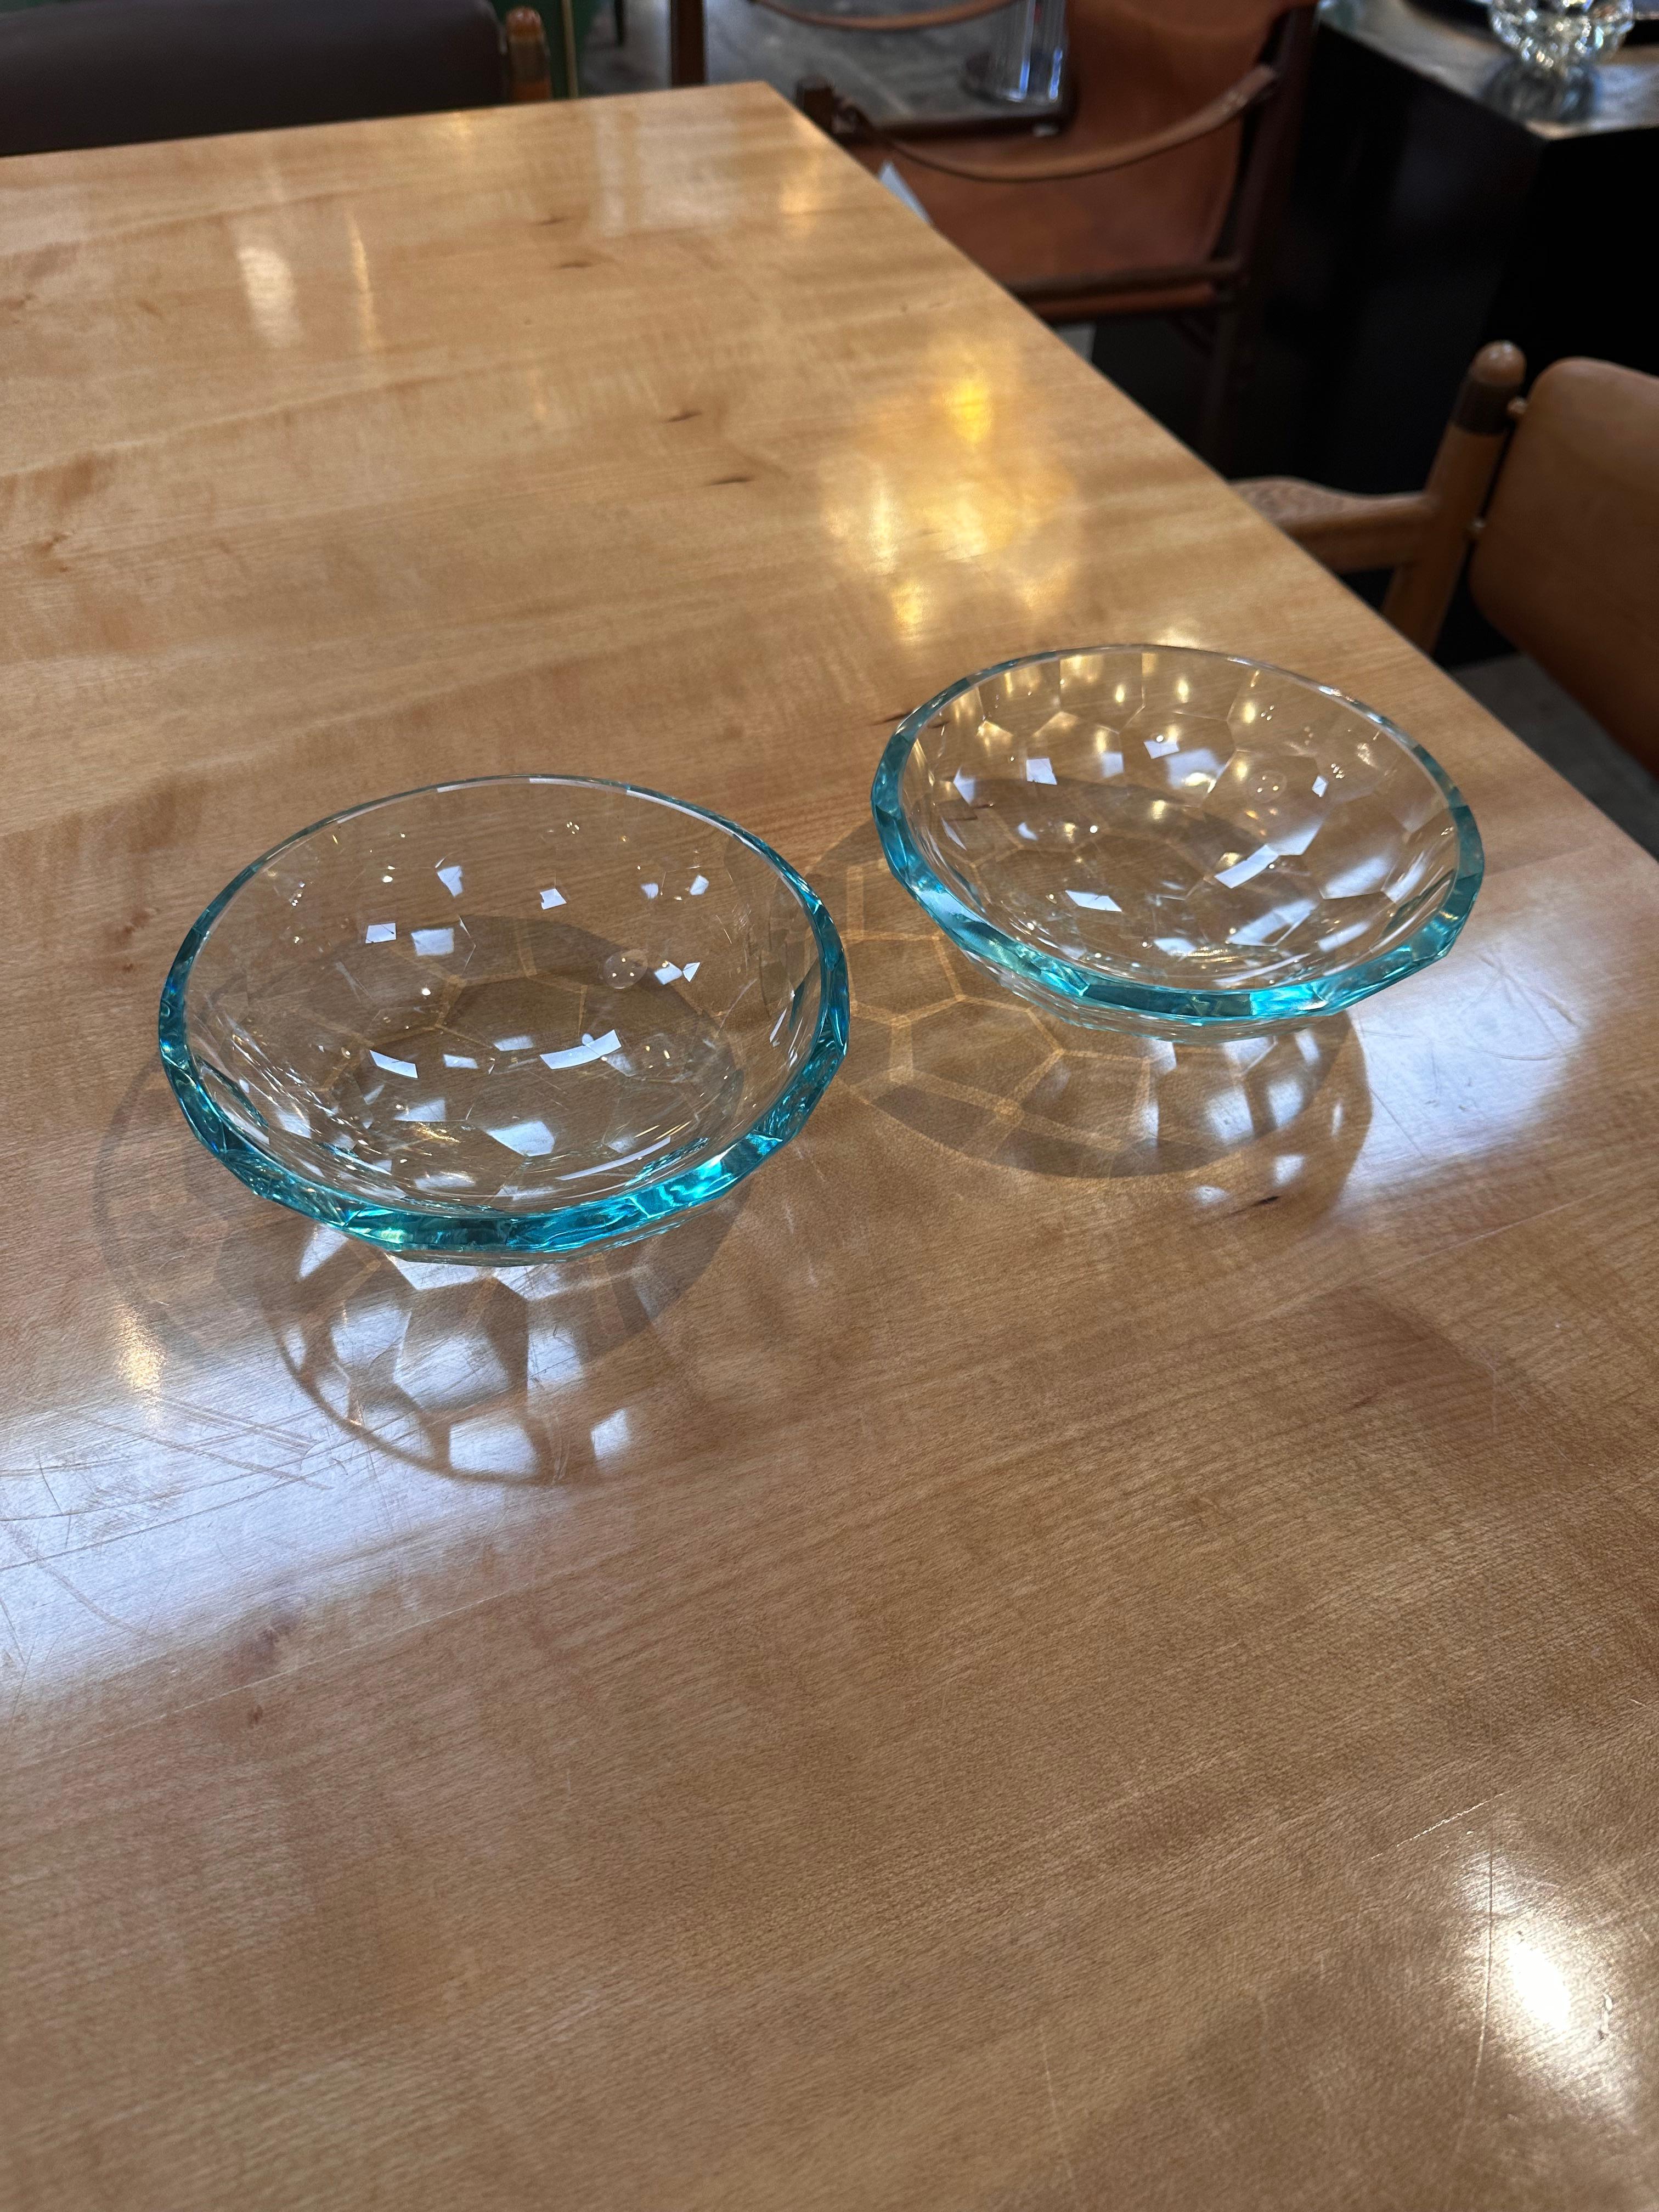 La paire de 2 bols décoratifs en verre fabriqués à la main est un ajout élégant et artistique à toute décoration intérieure. Fabriqués à la main avec soin, ces bols en verre présentent des designs uniques et une attention particulière aux détails.